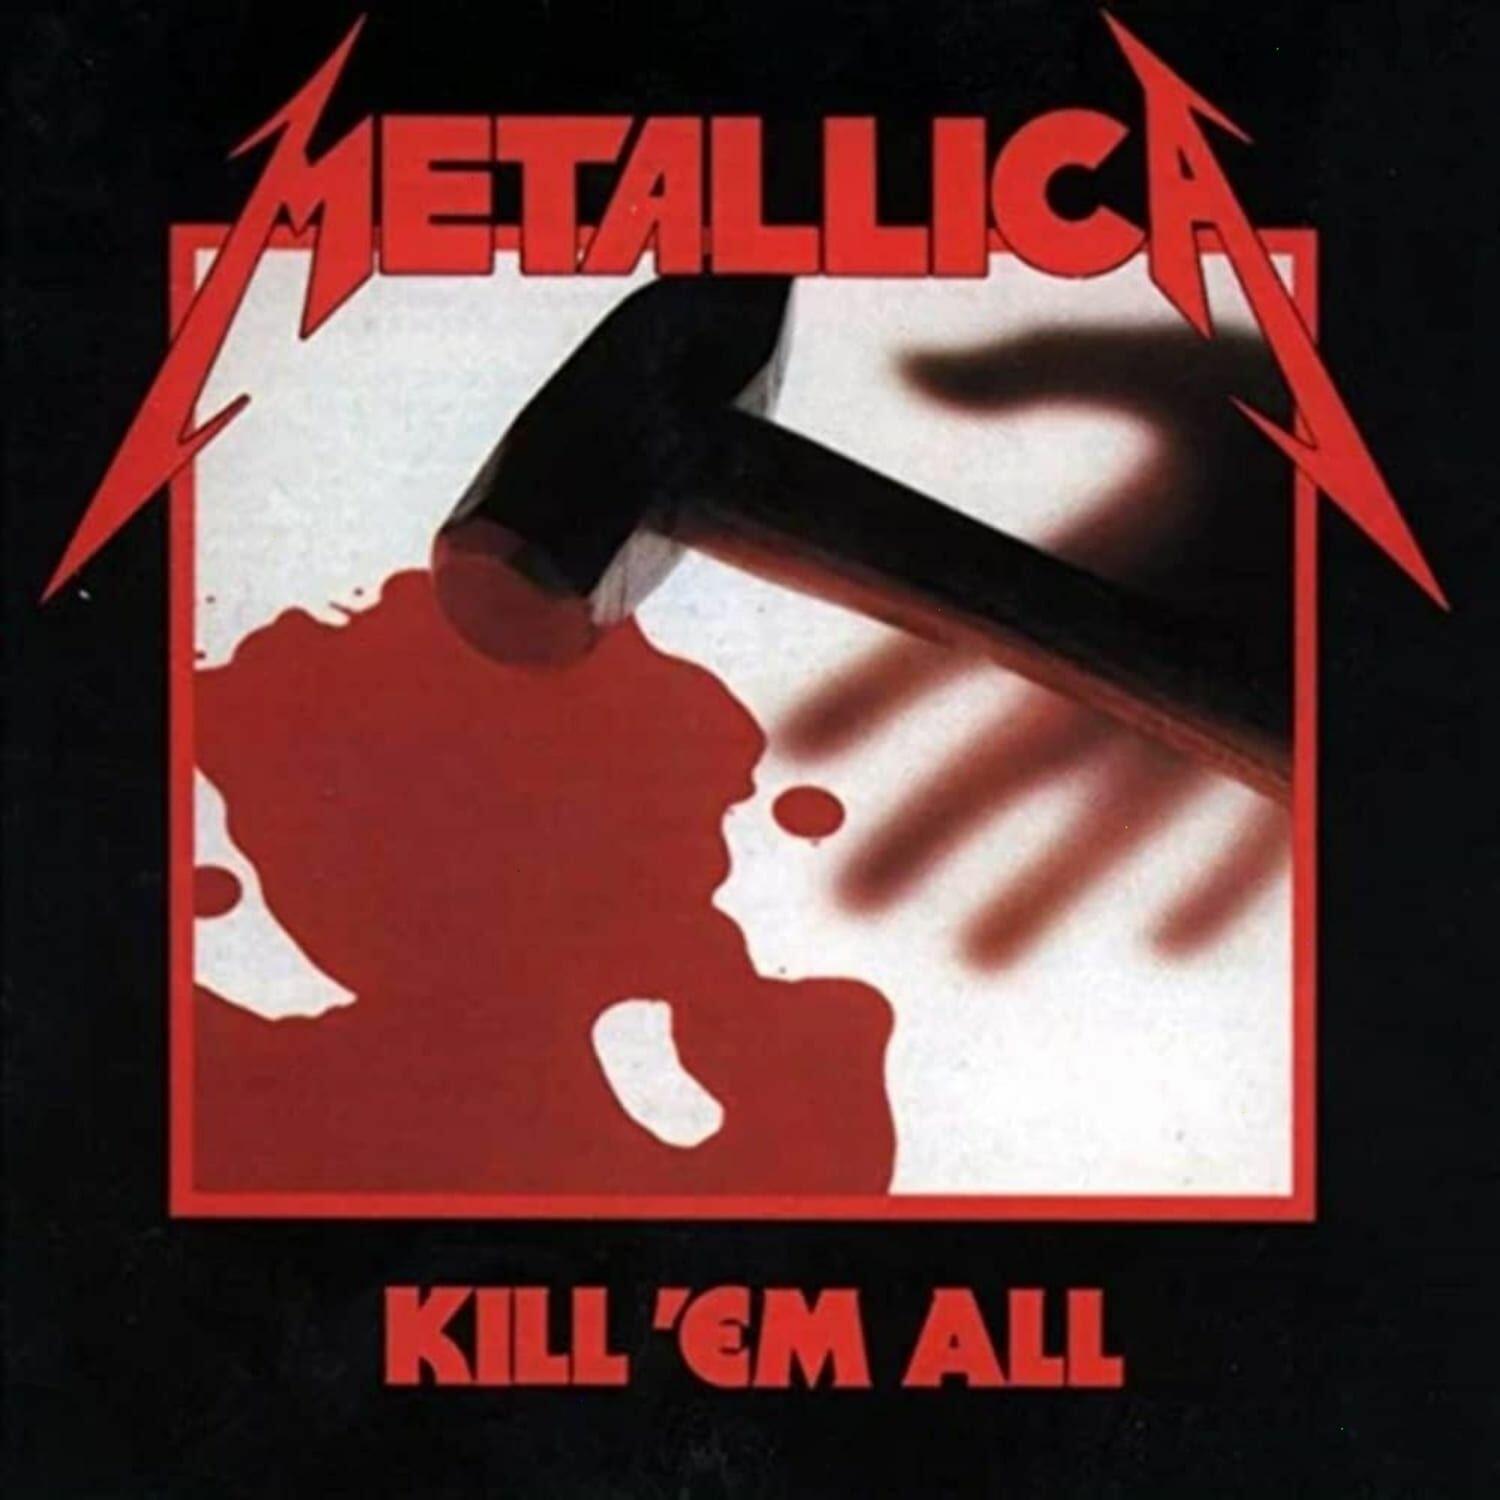 Metallica – Kill âEm All (Vinyl LP) on MovieShack